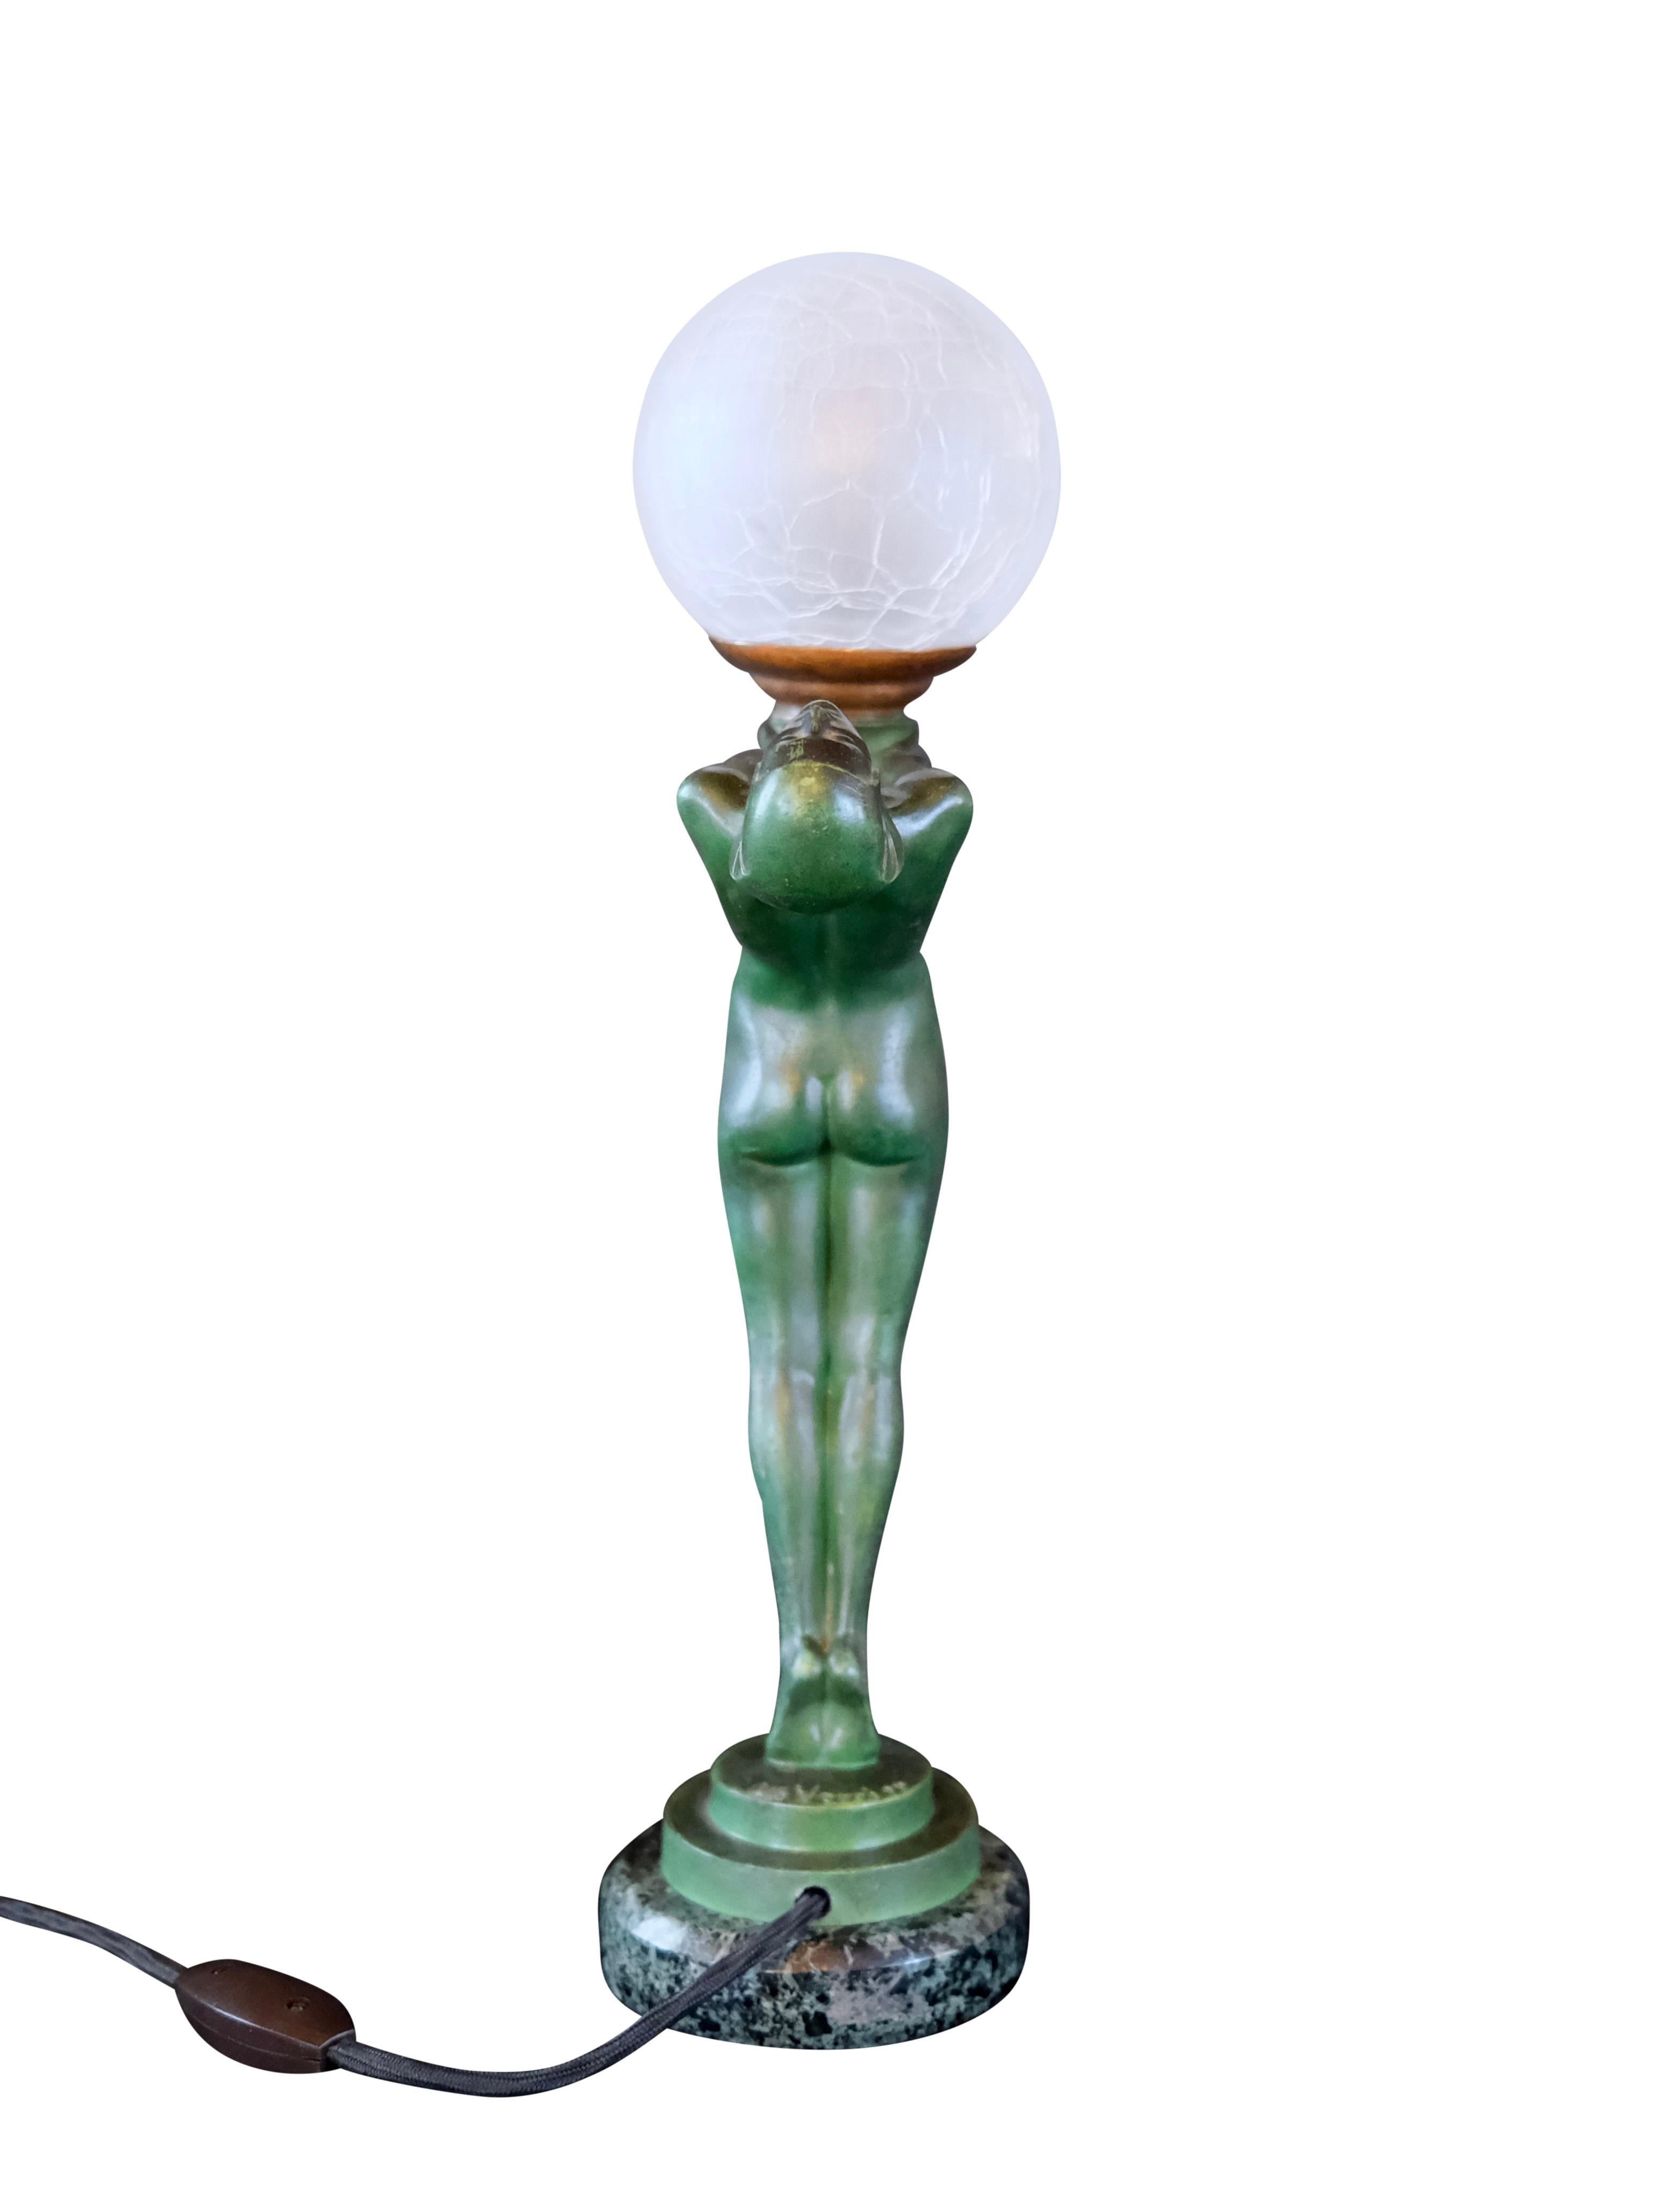 20th Century Important Art Deco Clarté Sculpture Lueur Lamp from the Art Deco Max Le Verrier